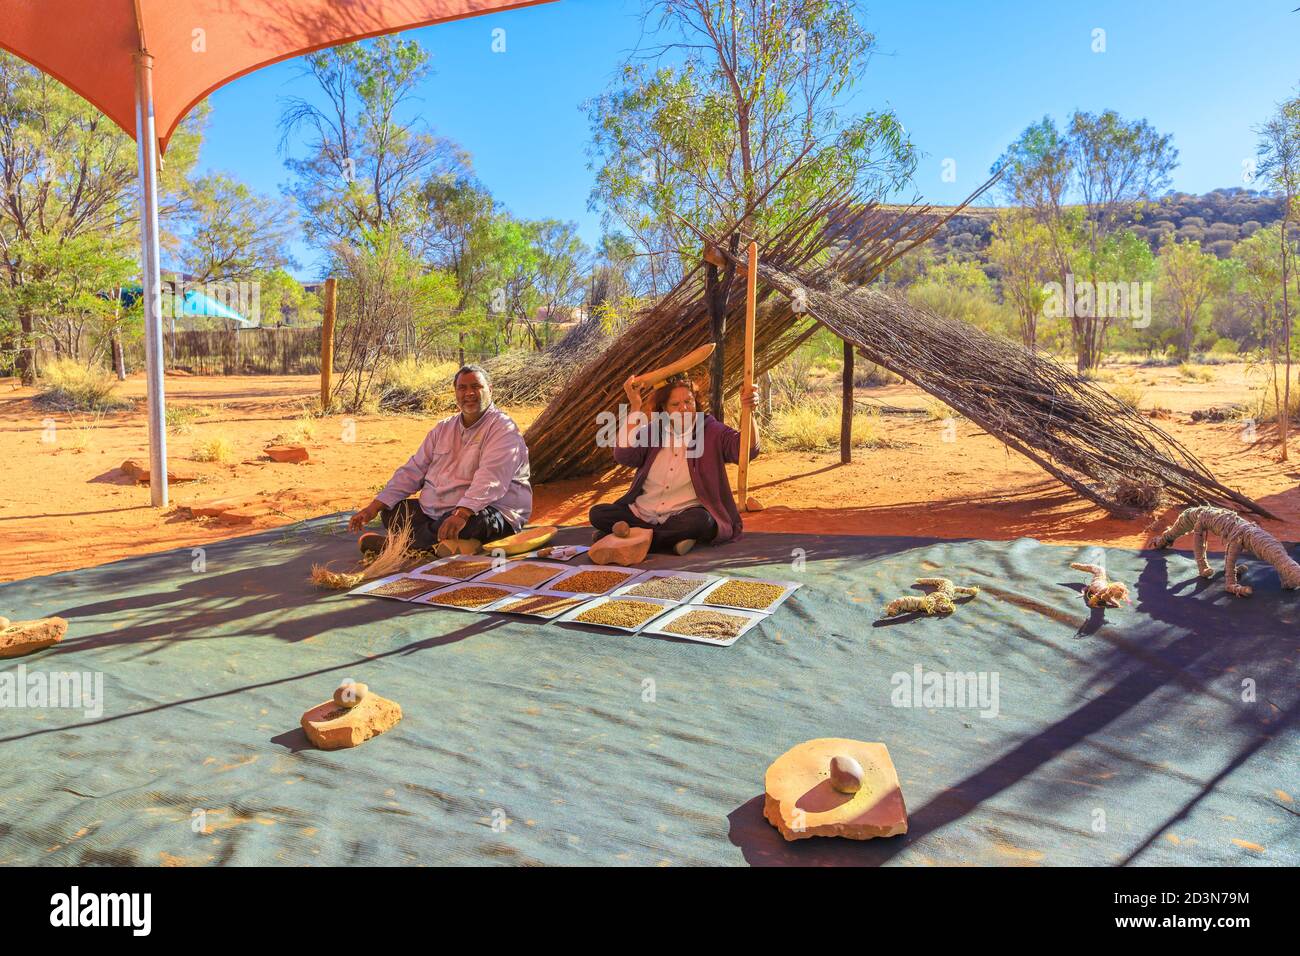 Kings Creek, Australien - 21. Aug 2019: Erleben Sie die Kultur der australischen Aborigines und zeigen Sie die traditionellen Buschsamen, die für Essen und Essen verwendet werden Stockfoto